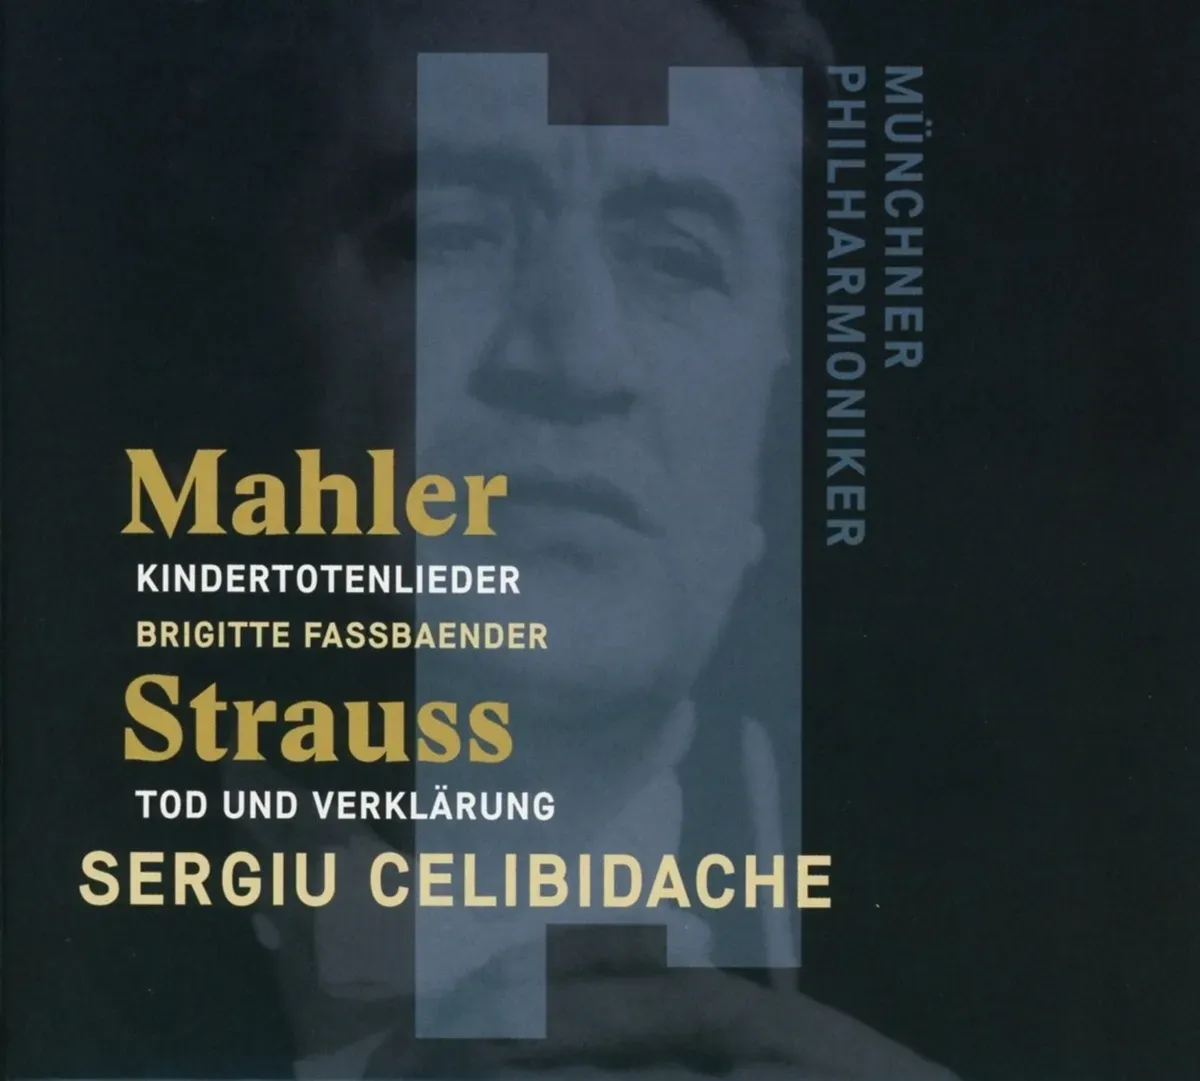 Kindertotenlieder Tod Und Verklärung - Sergiu Celibidache  Mp  Brigitte Fassbaender. (CD)